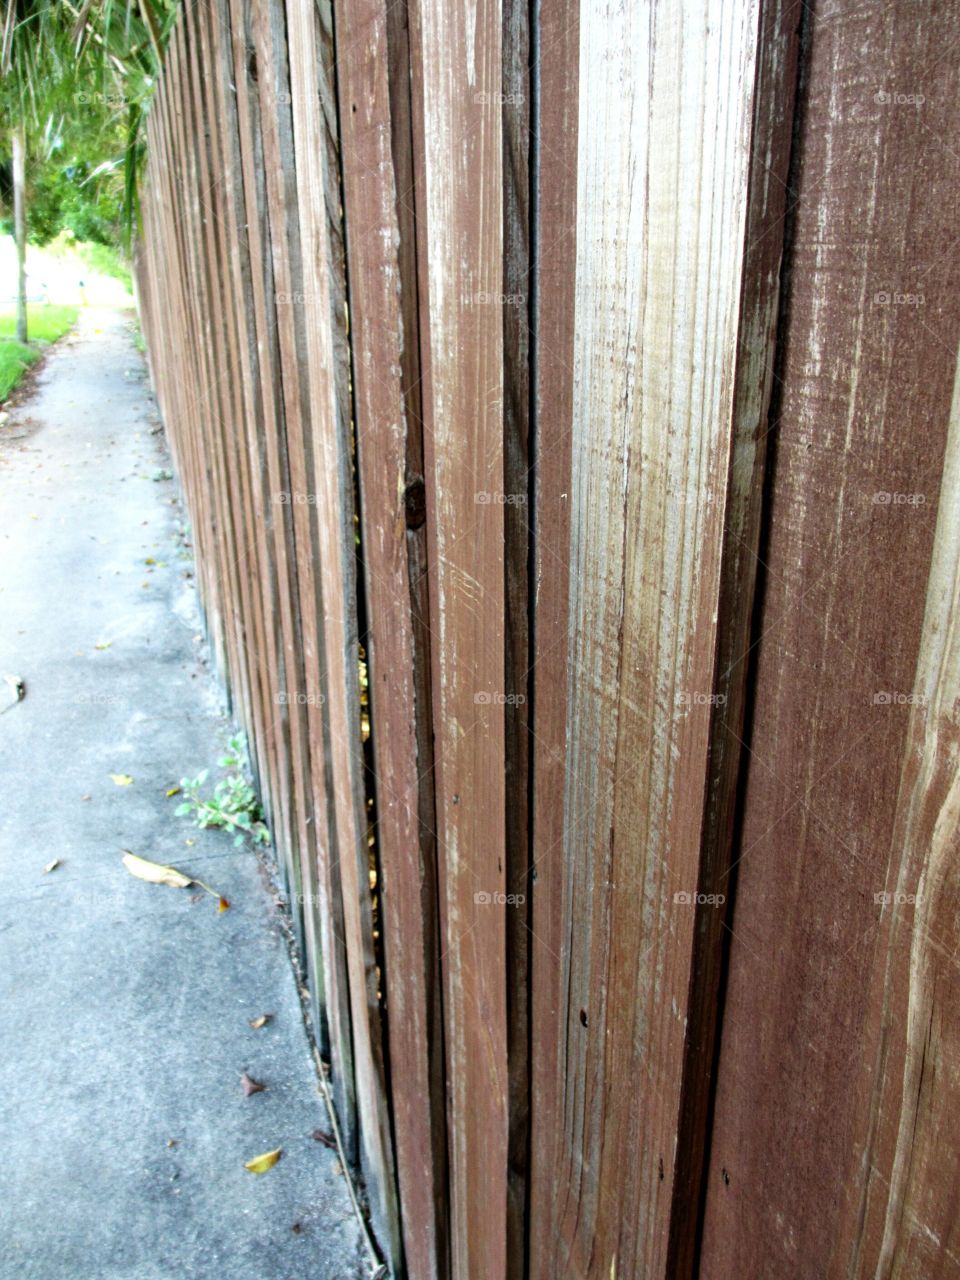 wood fencing. Wood fencing along sidewalk